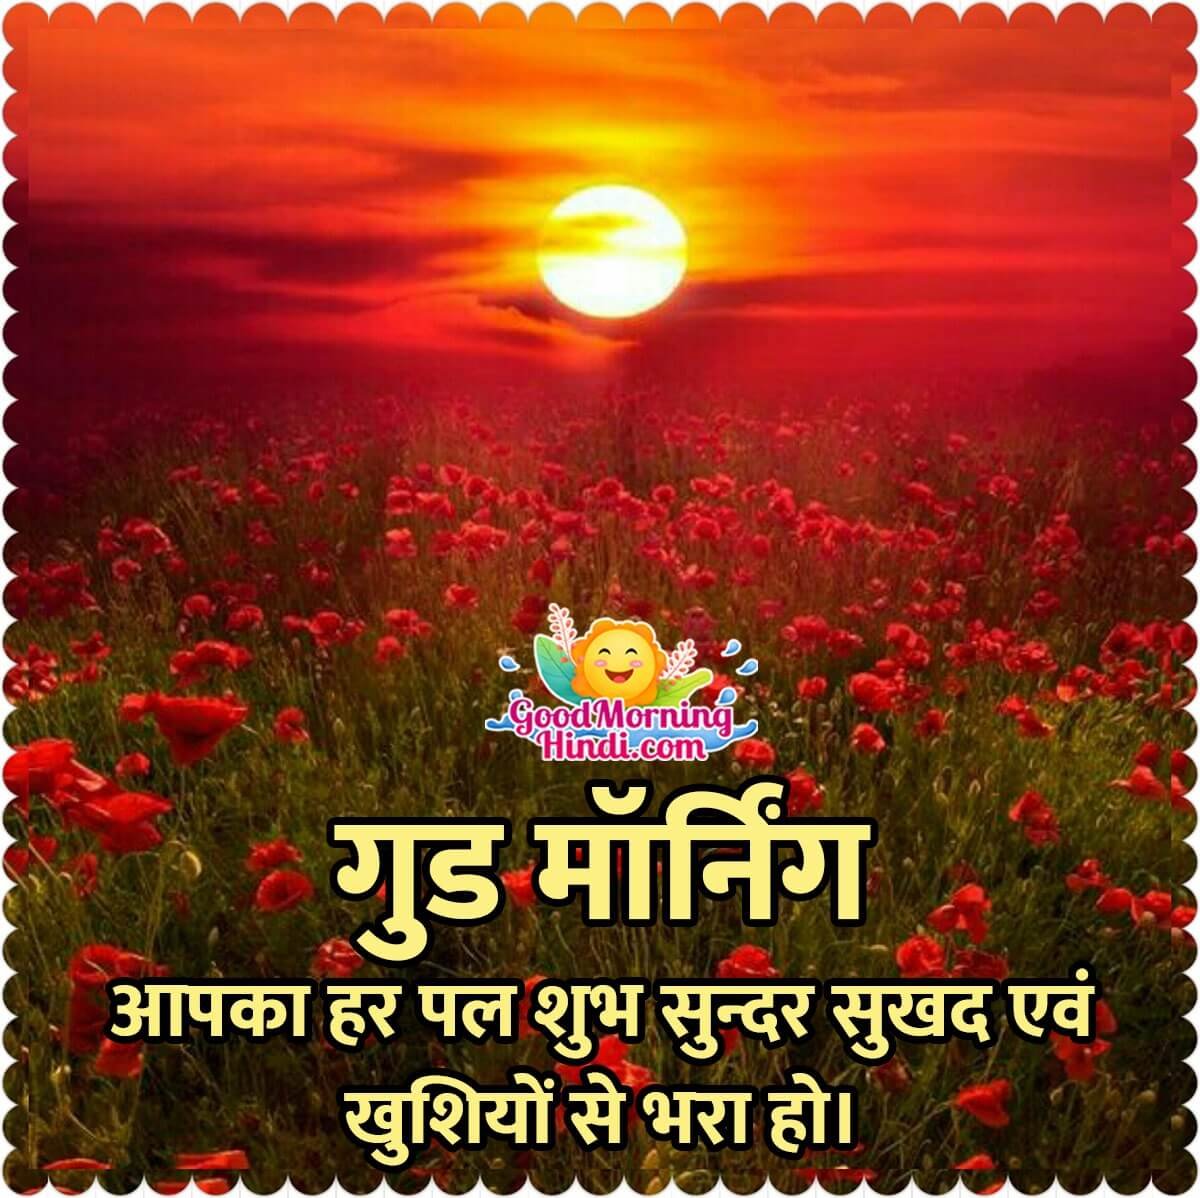 Good Morning Hindi Sunrise Images - Good Morning Wishes & Images ...